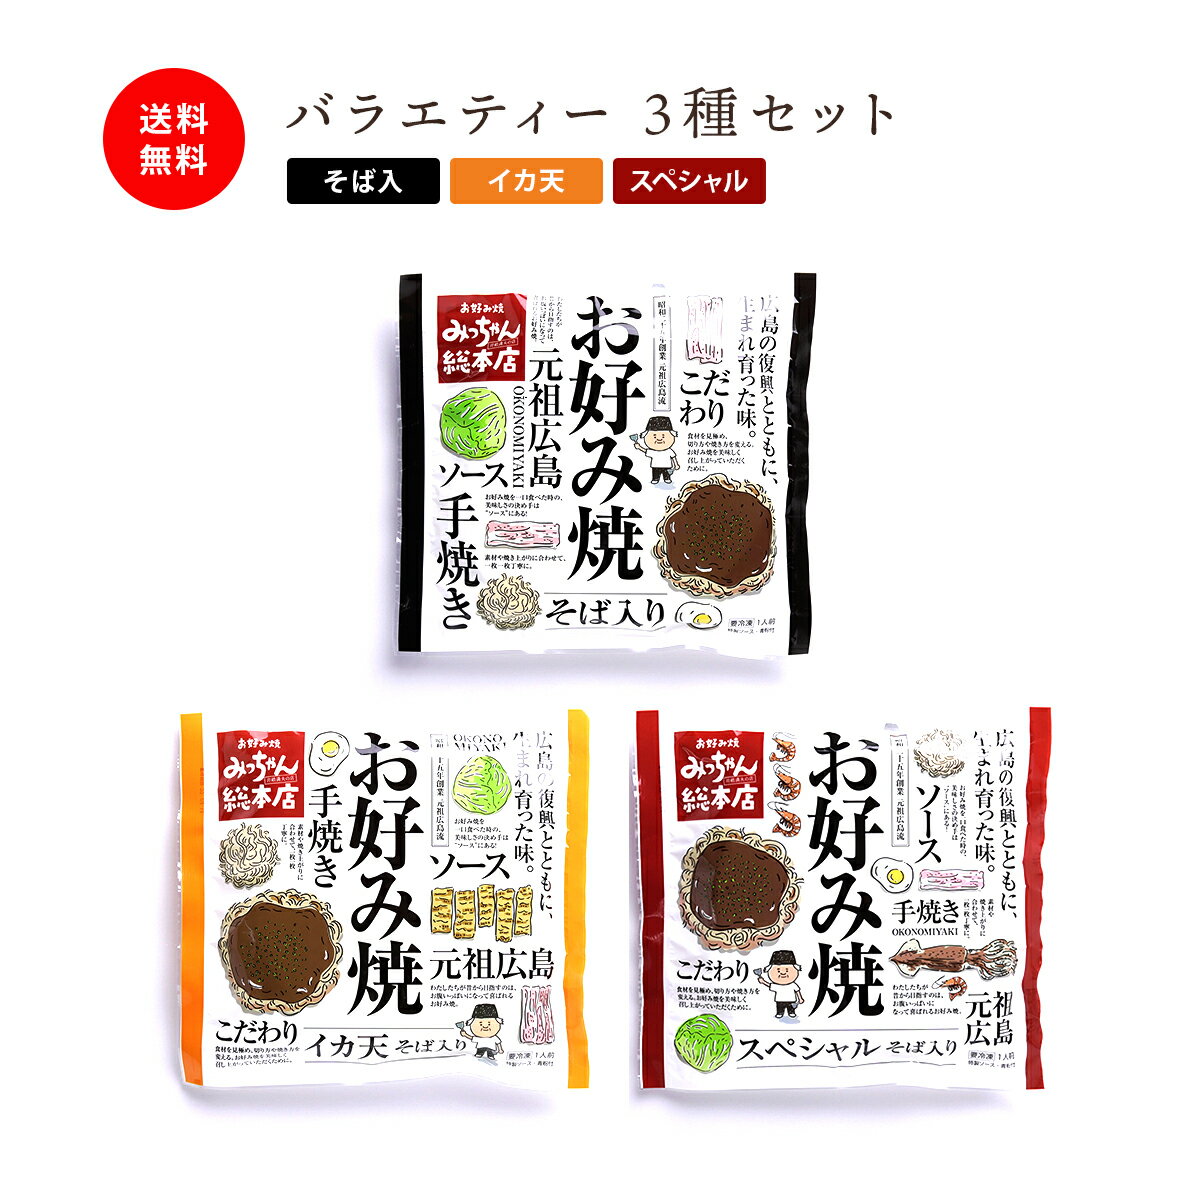 【公式】広島流お好み焼 ギフト用 バラエティー 3種セット 